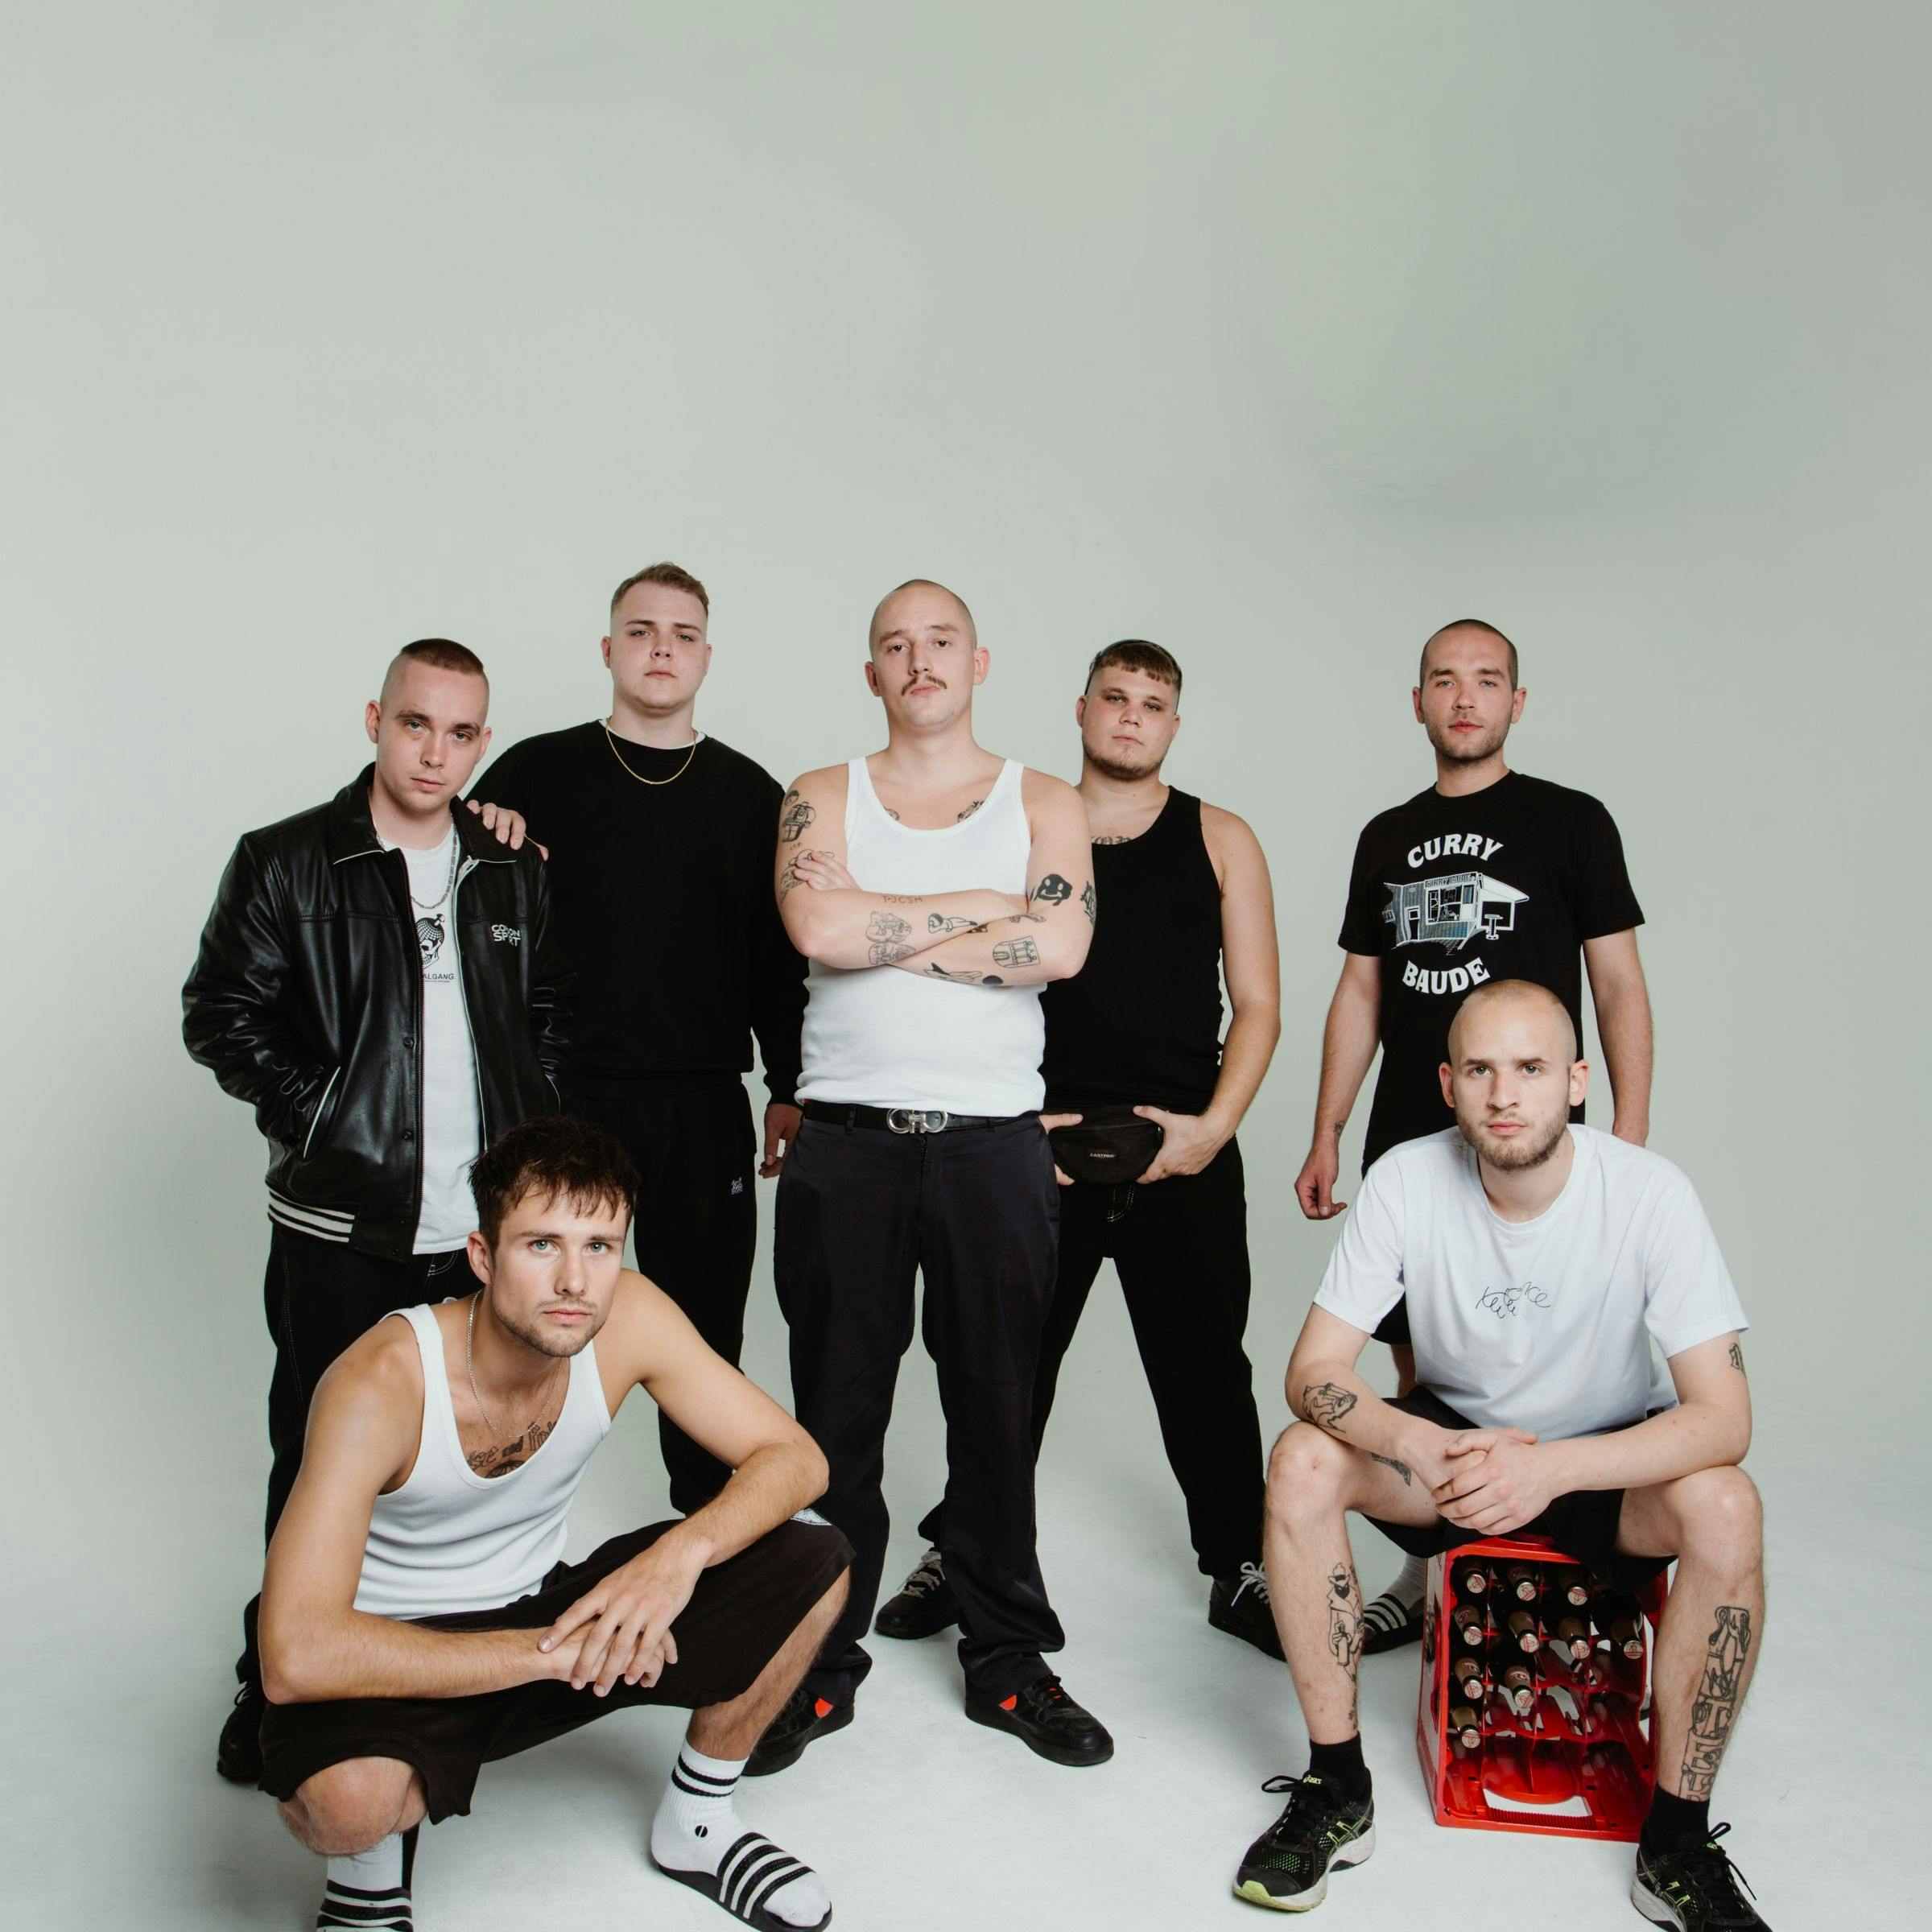 Fünf der sieben Mitglieder der 102 Boyz stehen und zwei hocken vor weißem Hintergrund. Sie sind größtenteils schwarz gekleidet und schauen ernst in die Kamera.